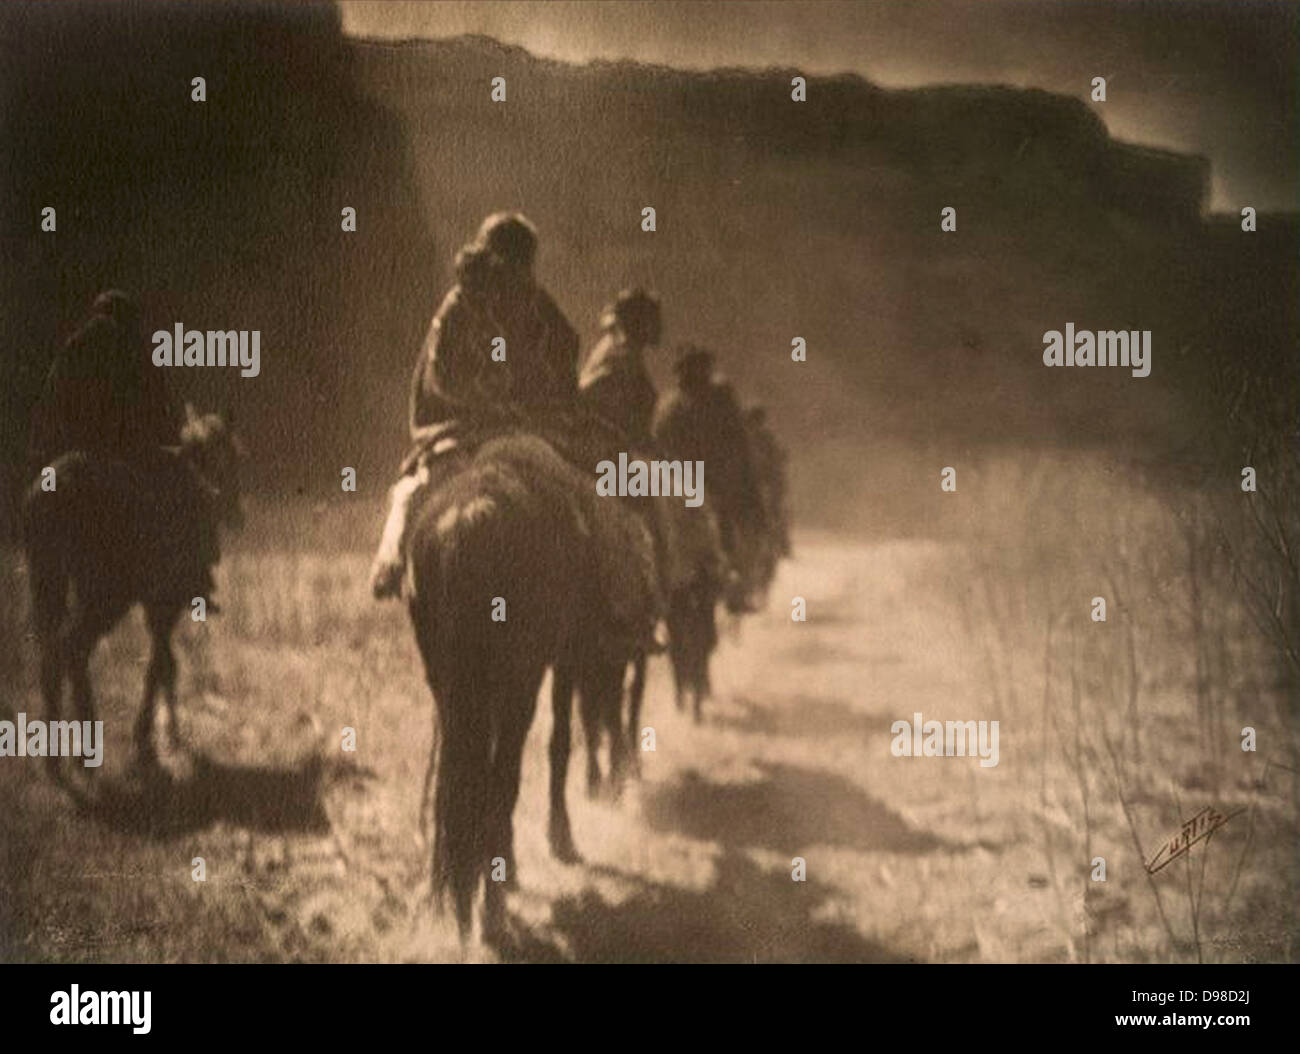 Native American Indians : The Vanishing race : un groupe d'équitation Navajo monté dans la distance. c1904. Photographie, Edward Curtis (1868-1952) nAVAJO. Banque D'Images